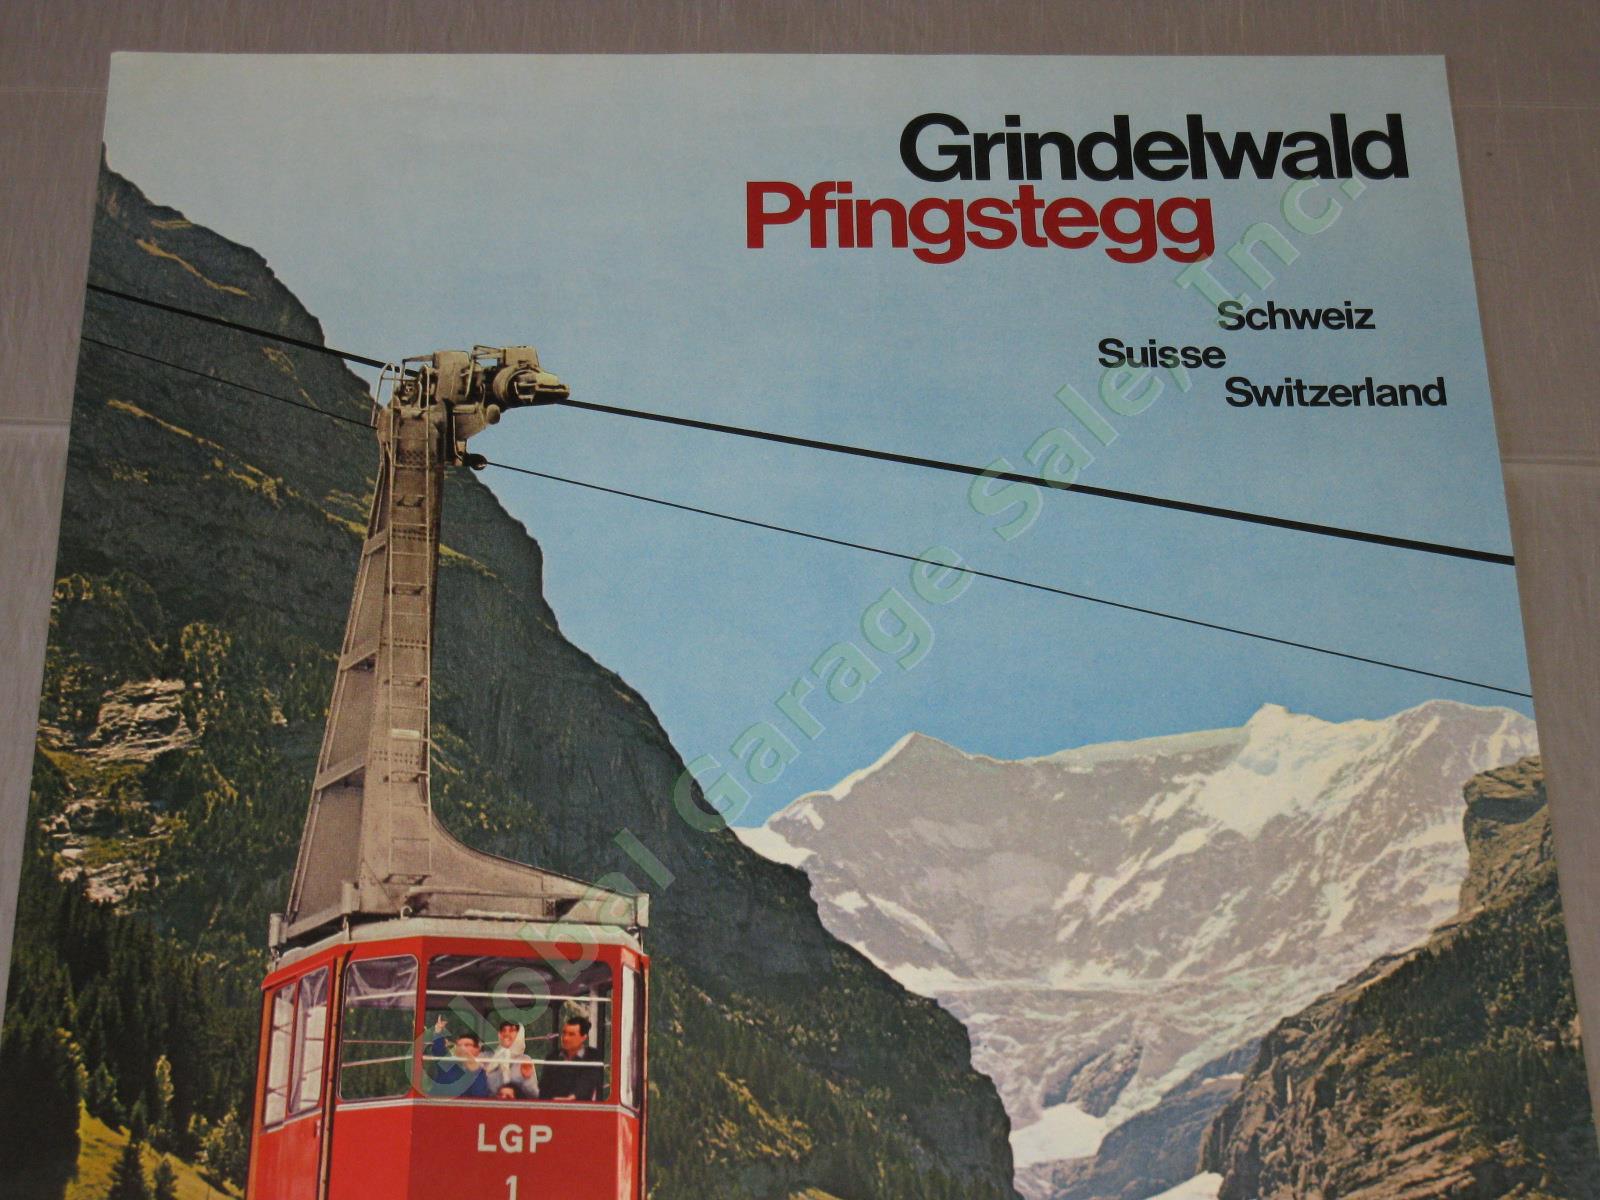 Vtg 1960 Swiss Travel Poster Grindelwald Pfingstegg LGP Cable Car Switzerland NR 1